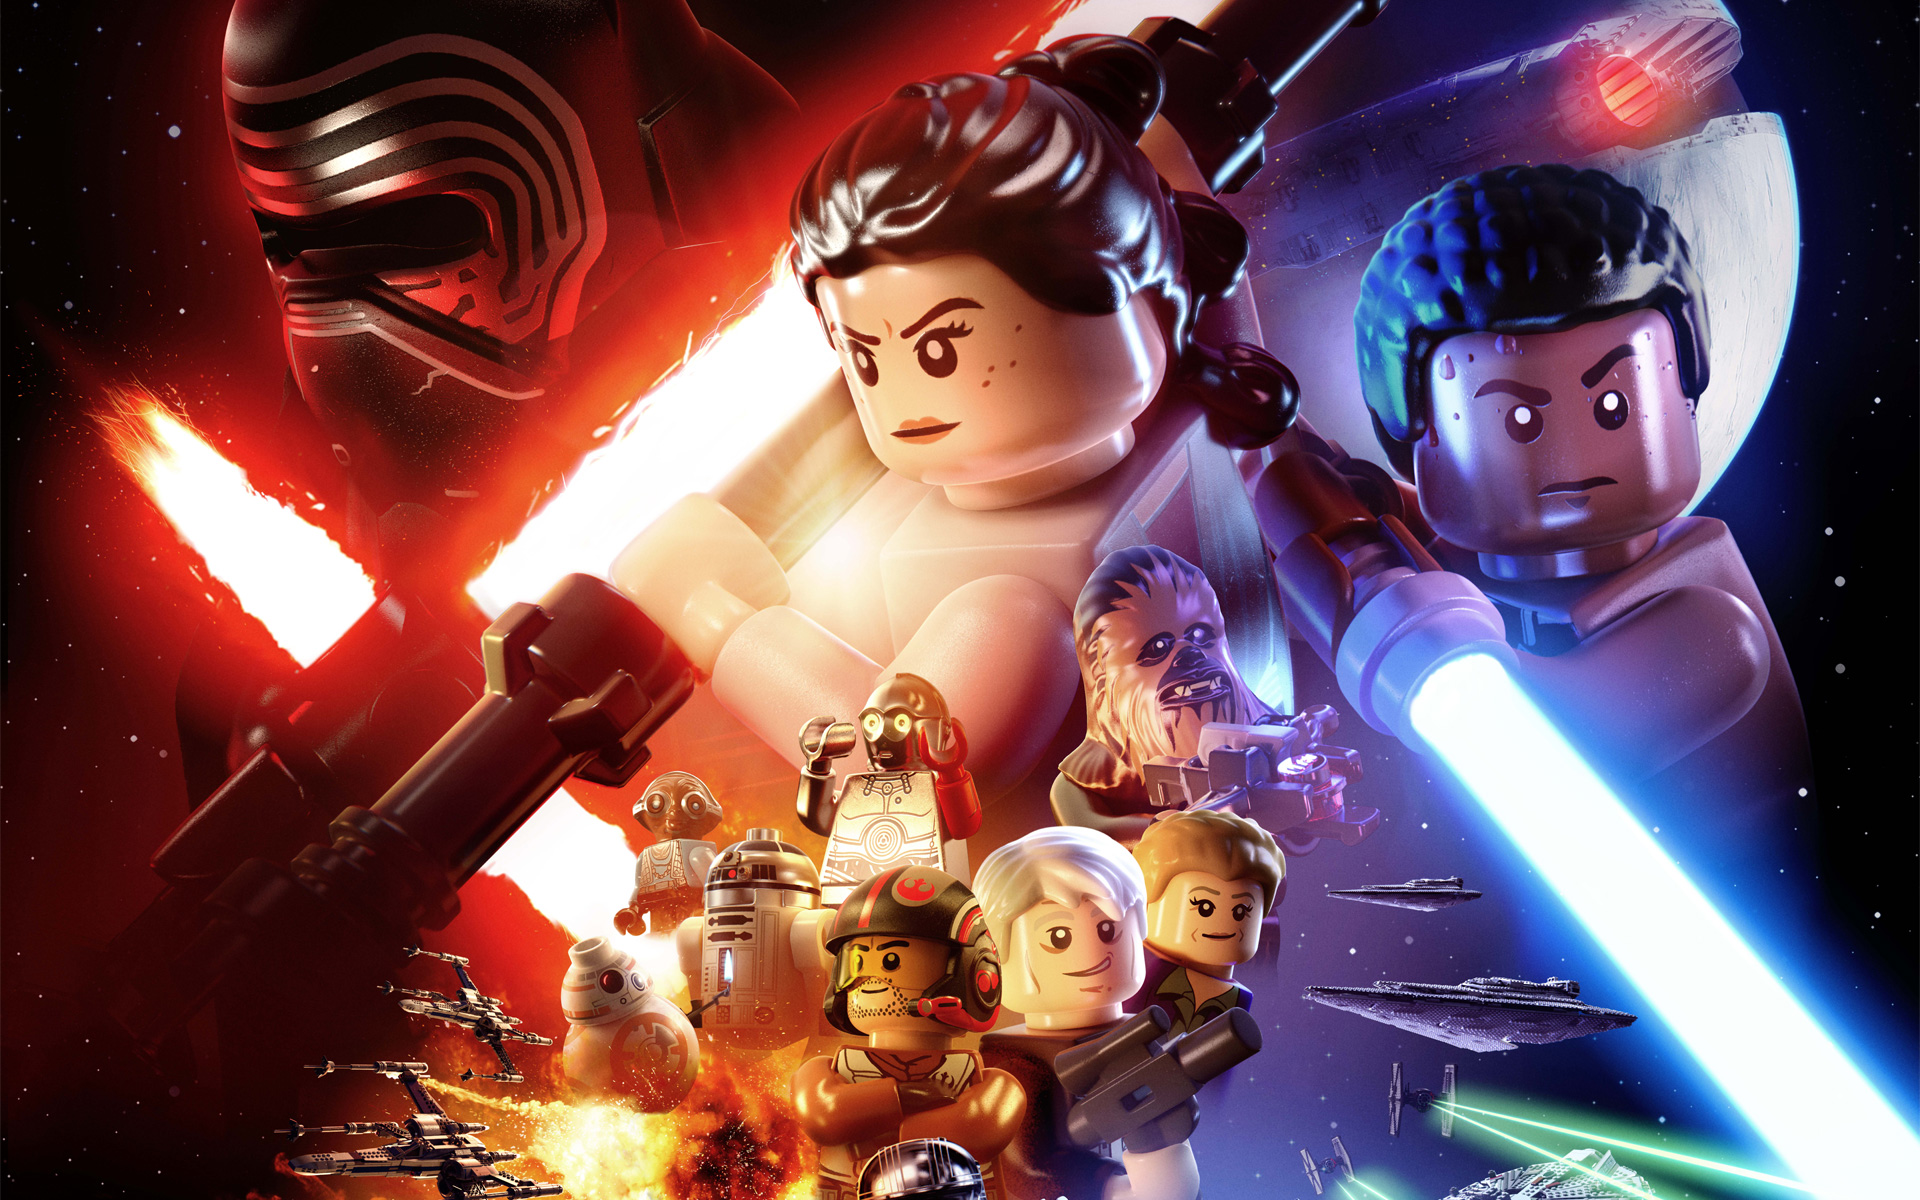 Star Wars Episode Vii The Force Awakens Lego Rey Star Wars Finn Star Wars Kylo Ren Chewbacca BB 8 Ha 1920x1200